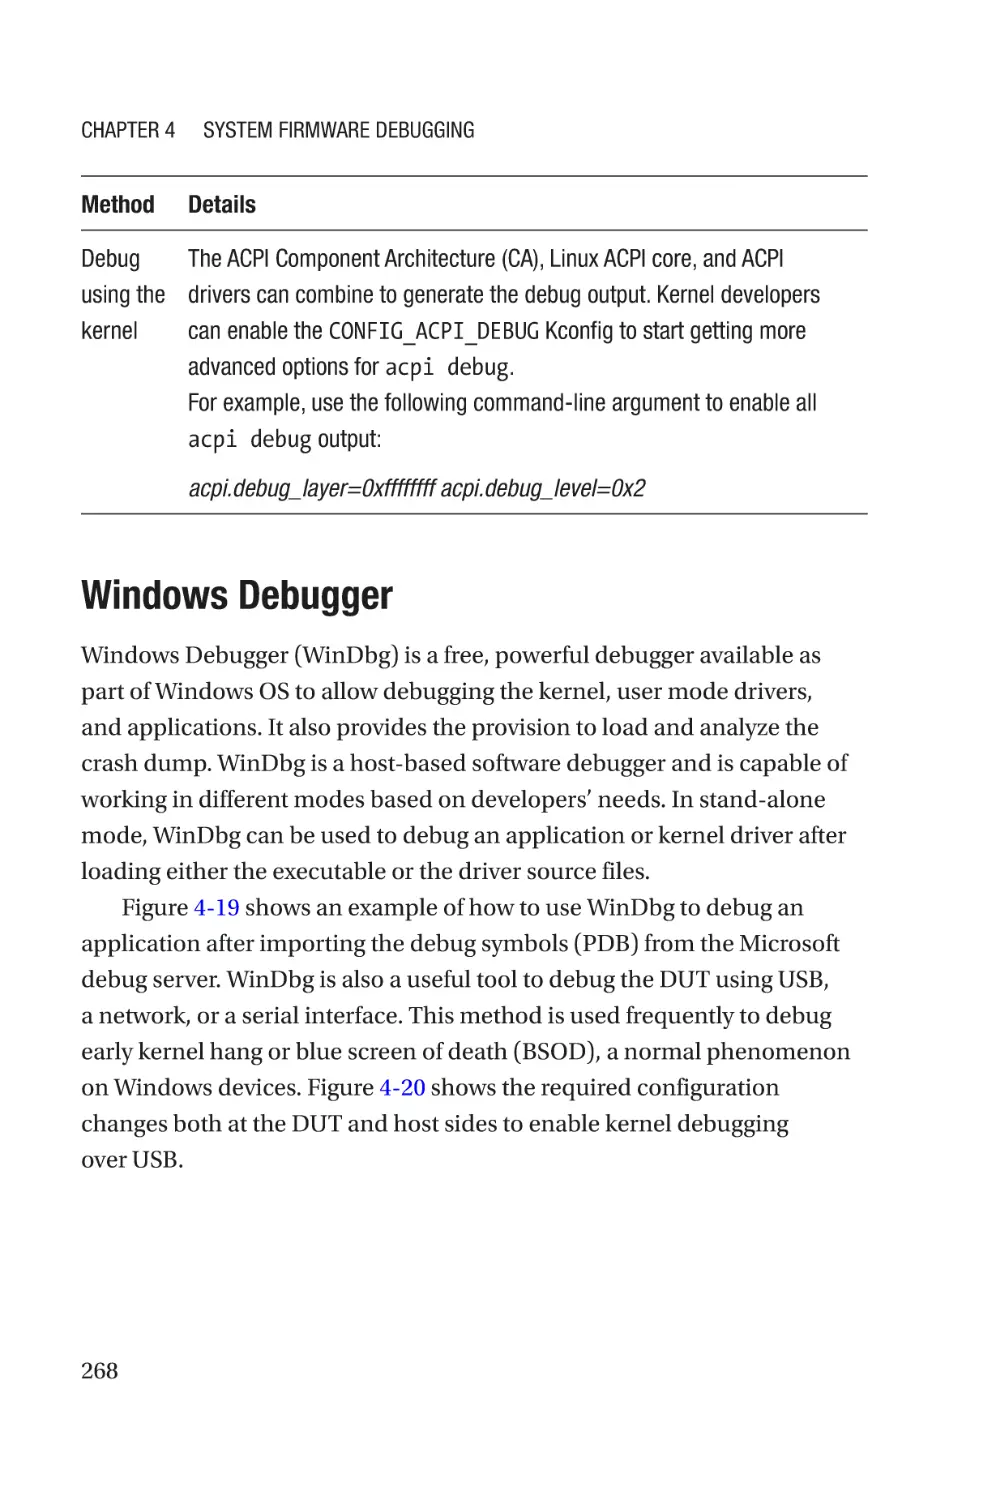 Windows Debugger